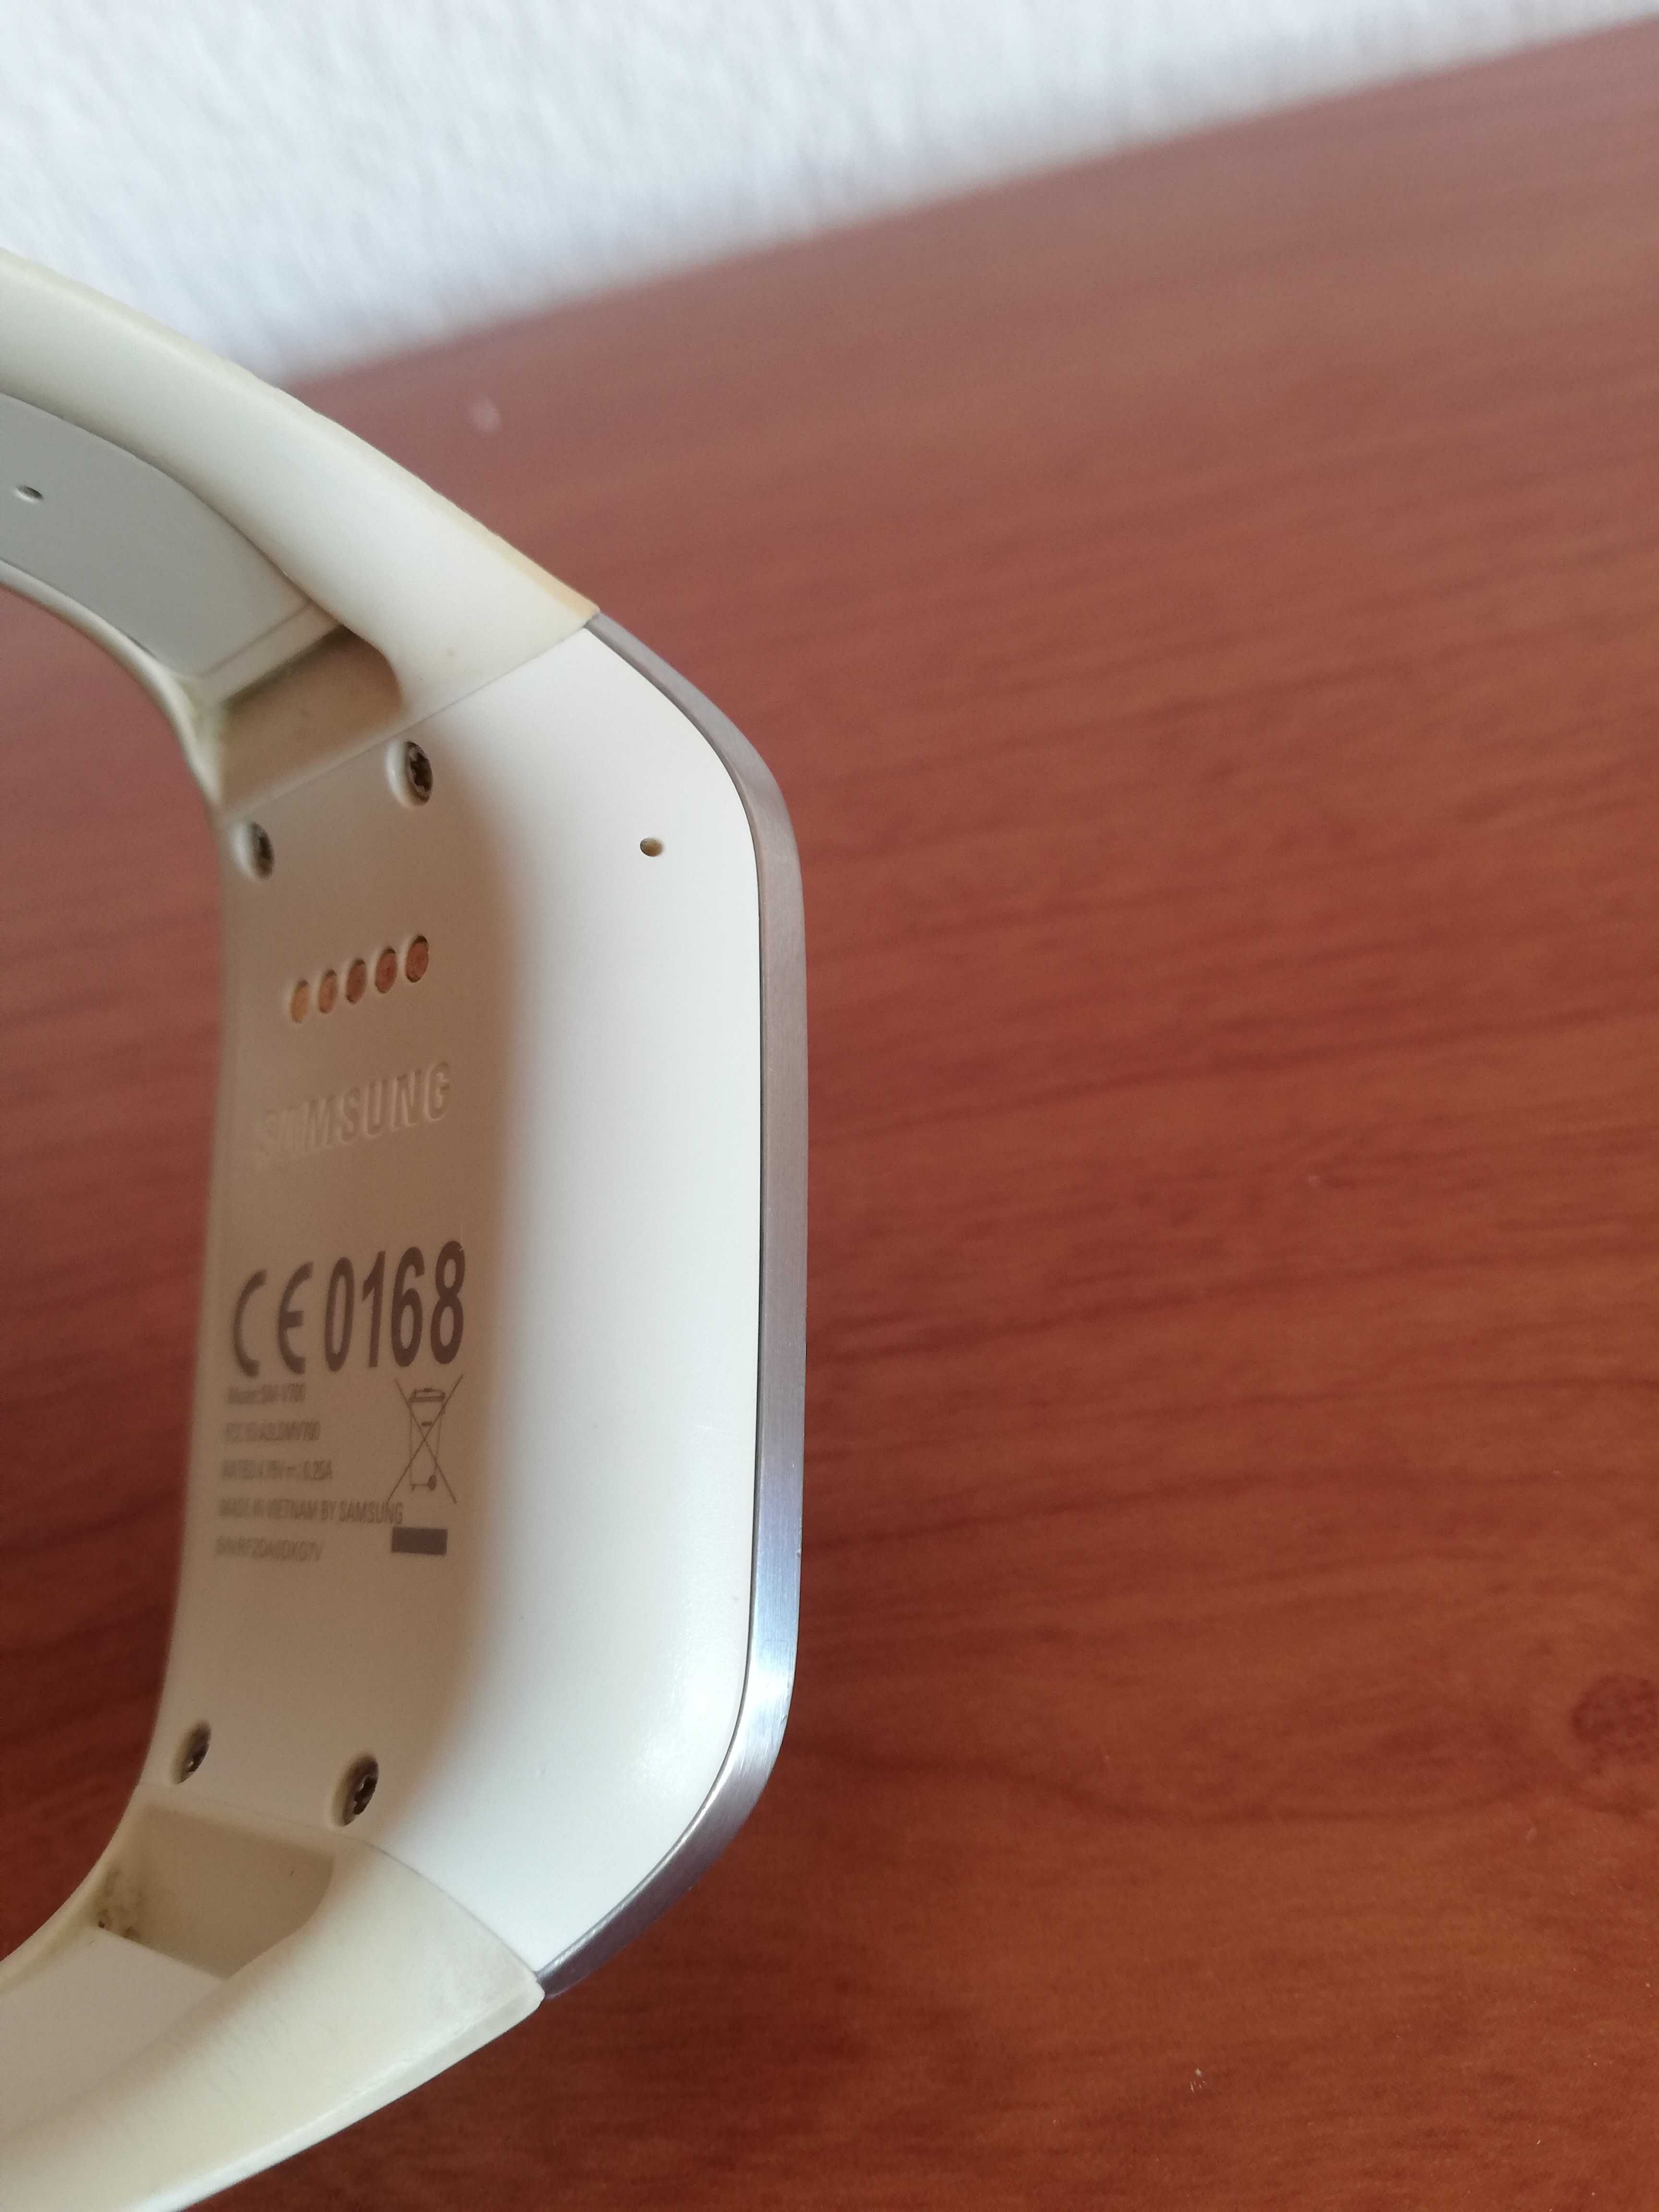 Samsung Galaxy Gear SM-V700 smart watch